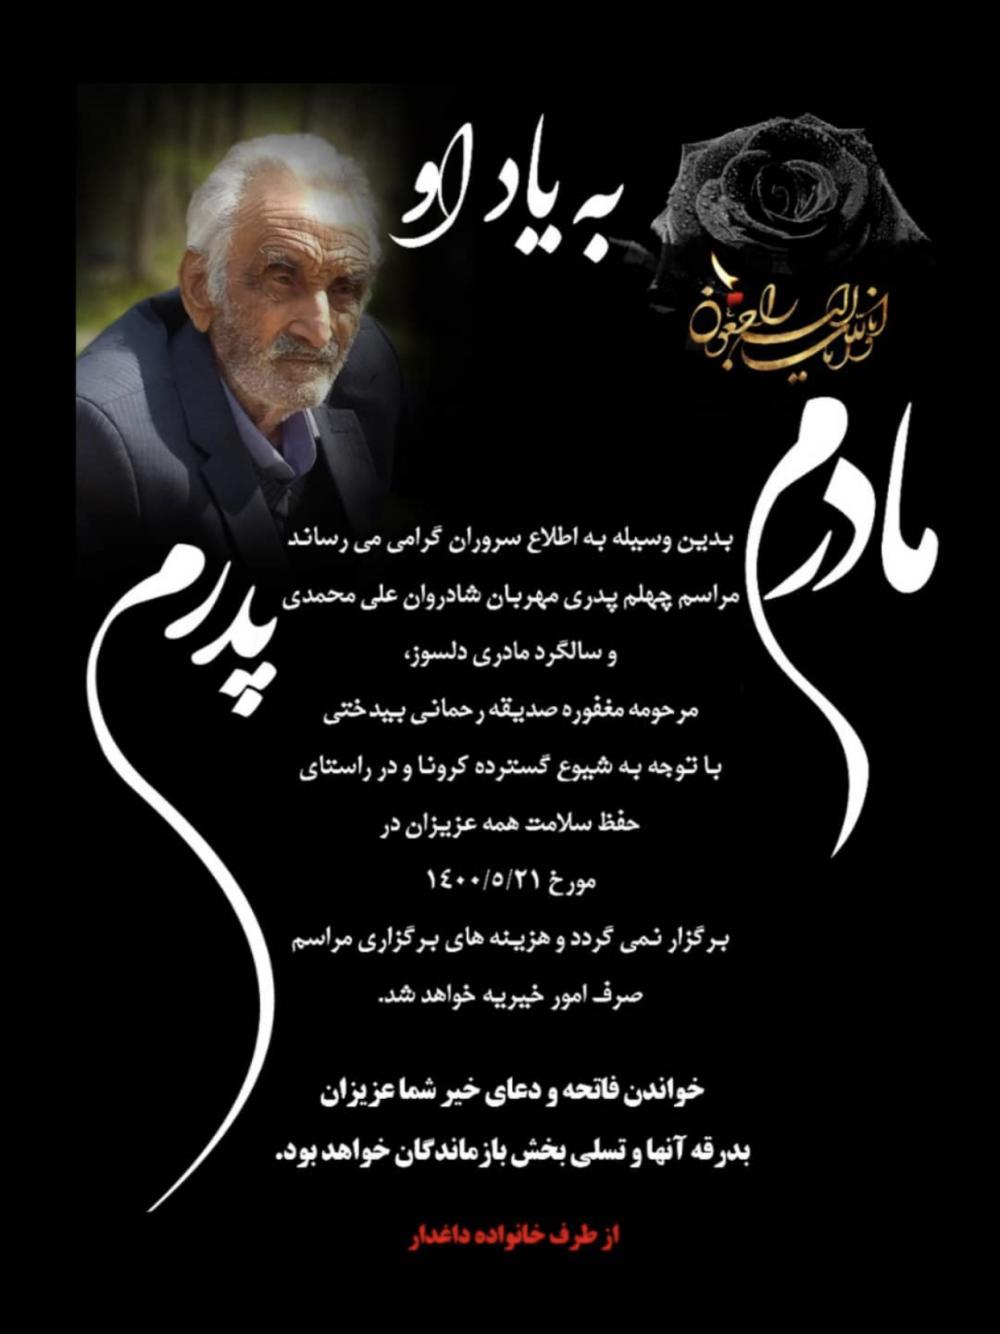 یادبود شادروان مرحوم علی محمدی / مرحومه صدیقه رحمانی بیدختی